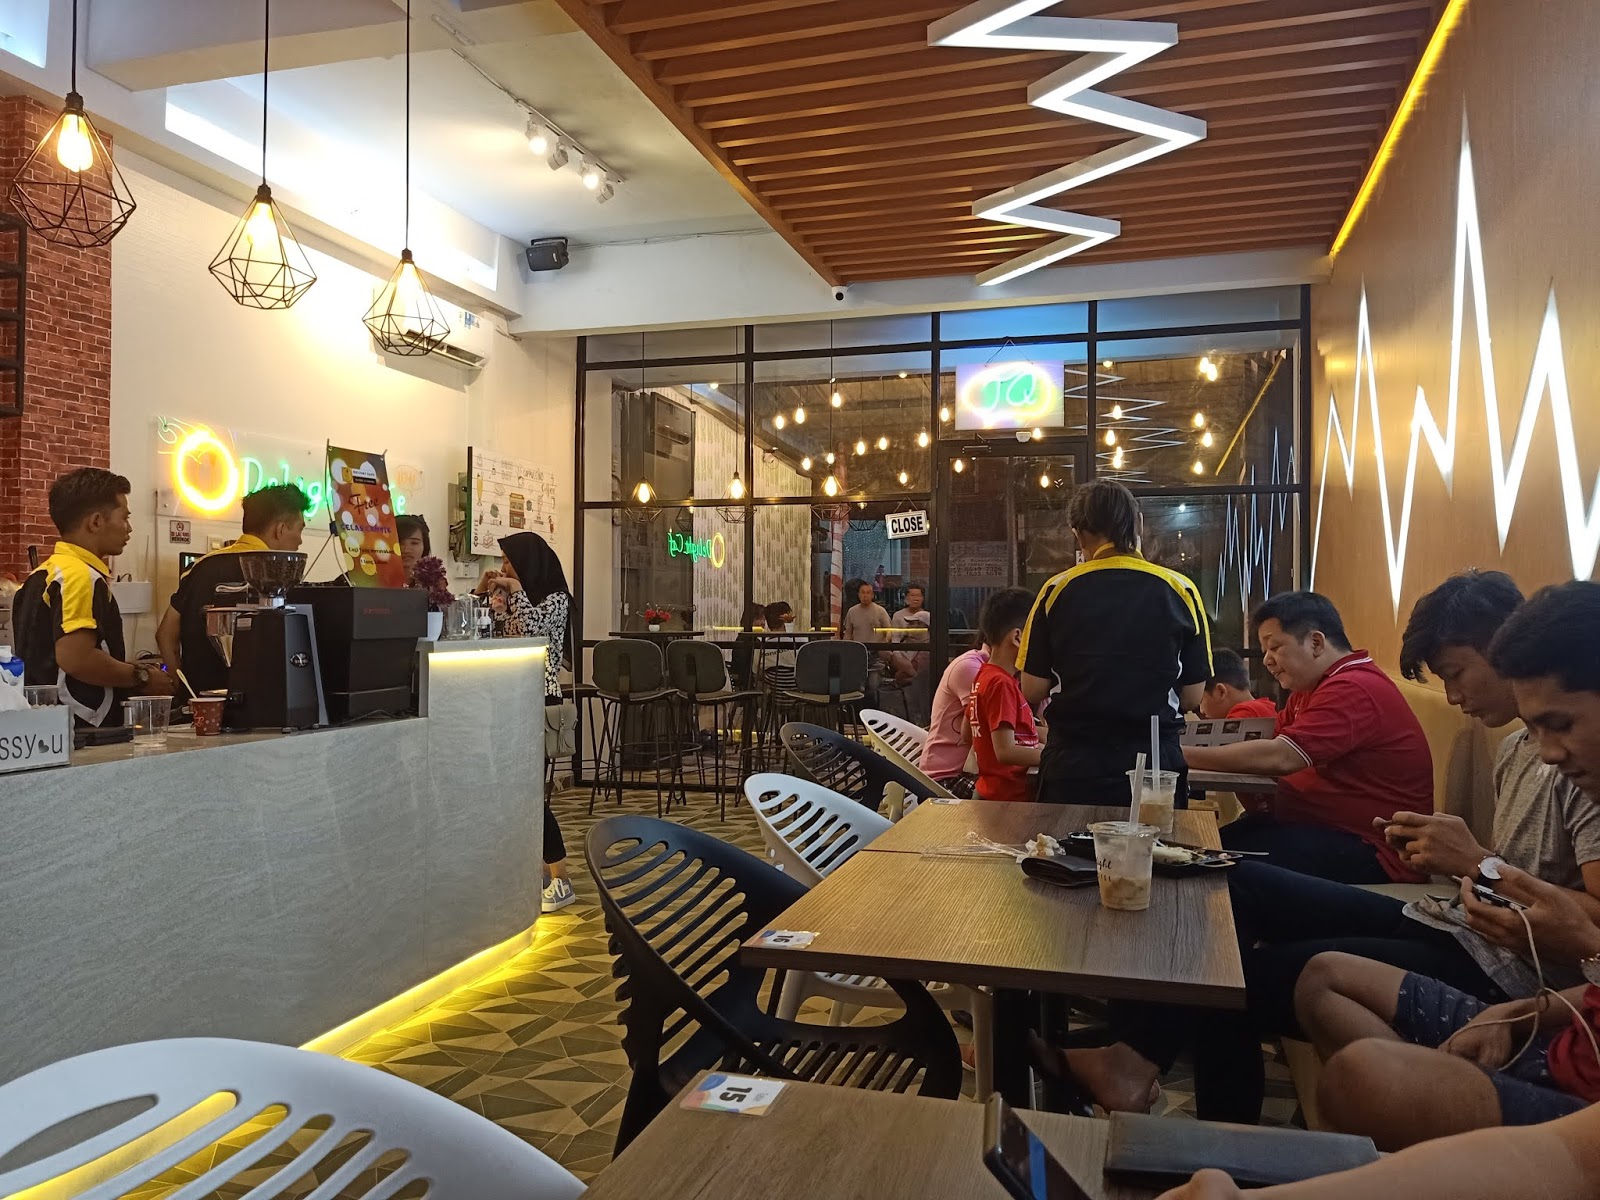 Tempat Nongkrong Asik di Delight Cafe  Dadap Tangerang 